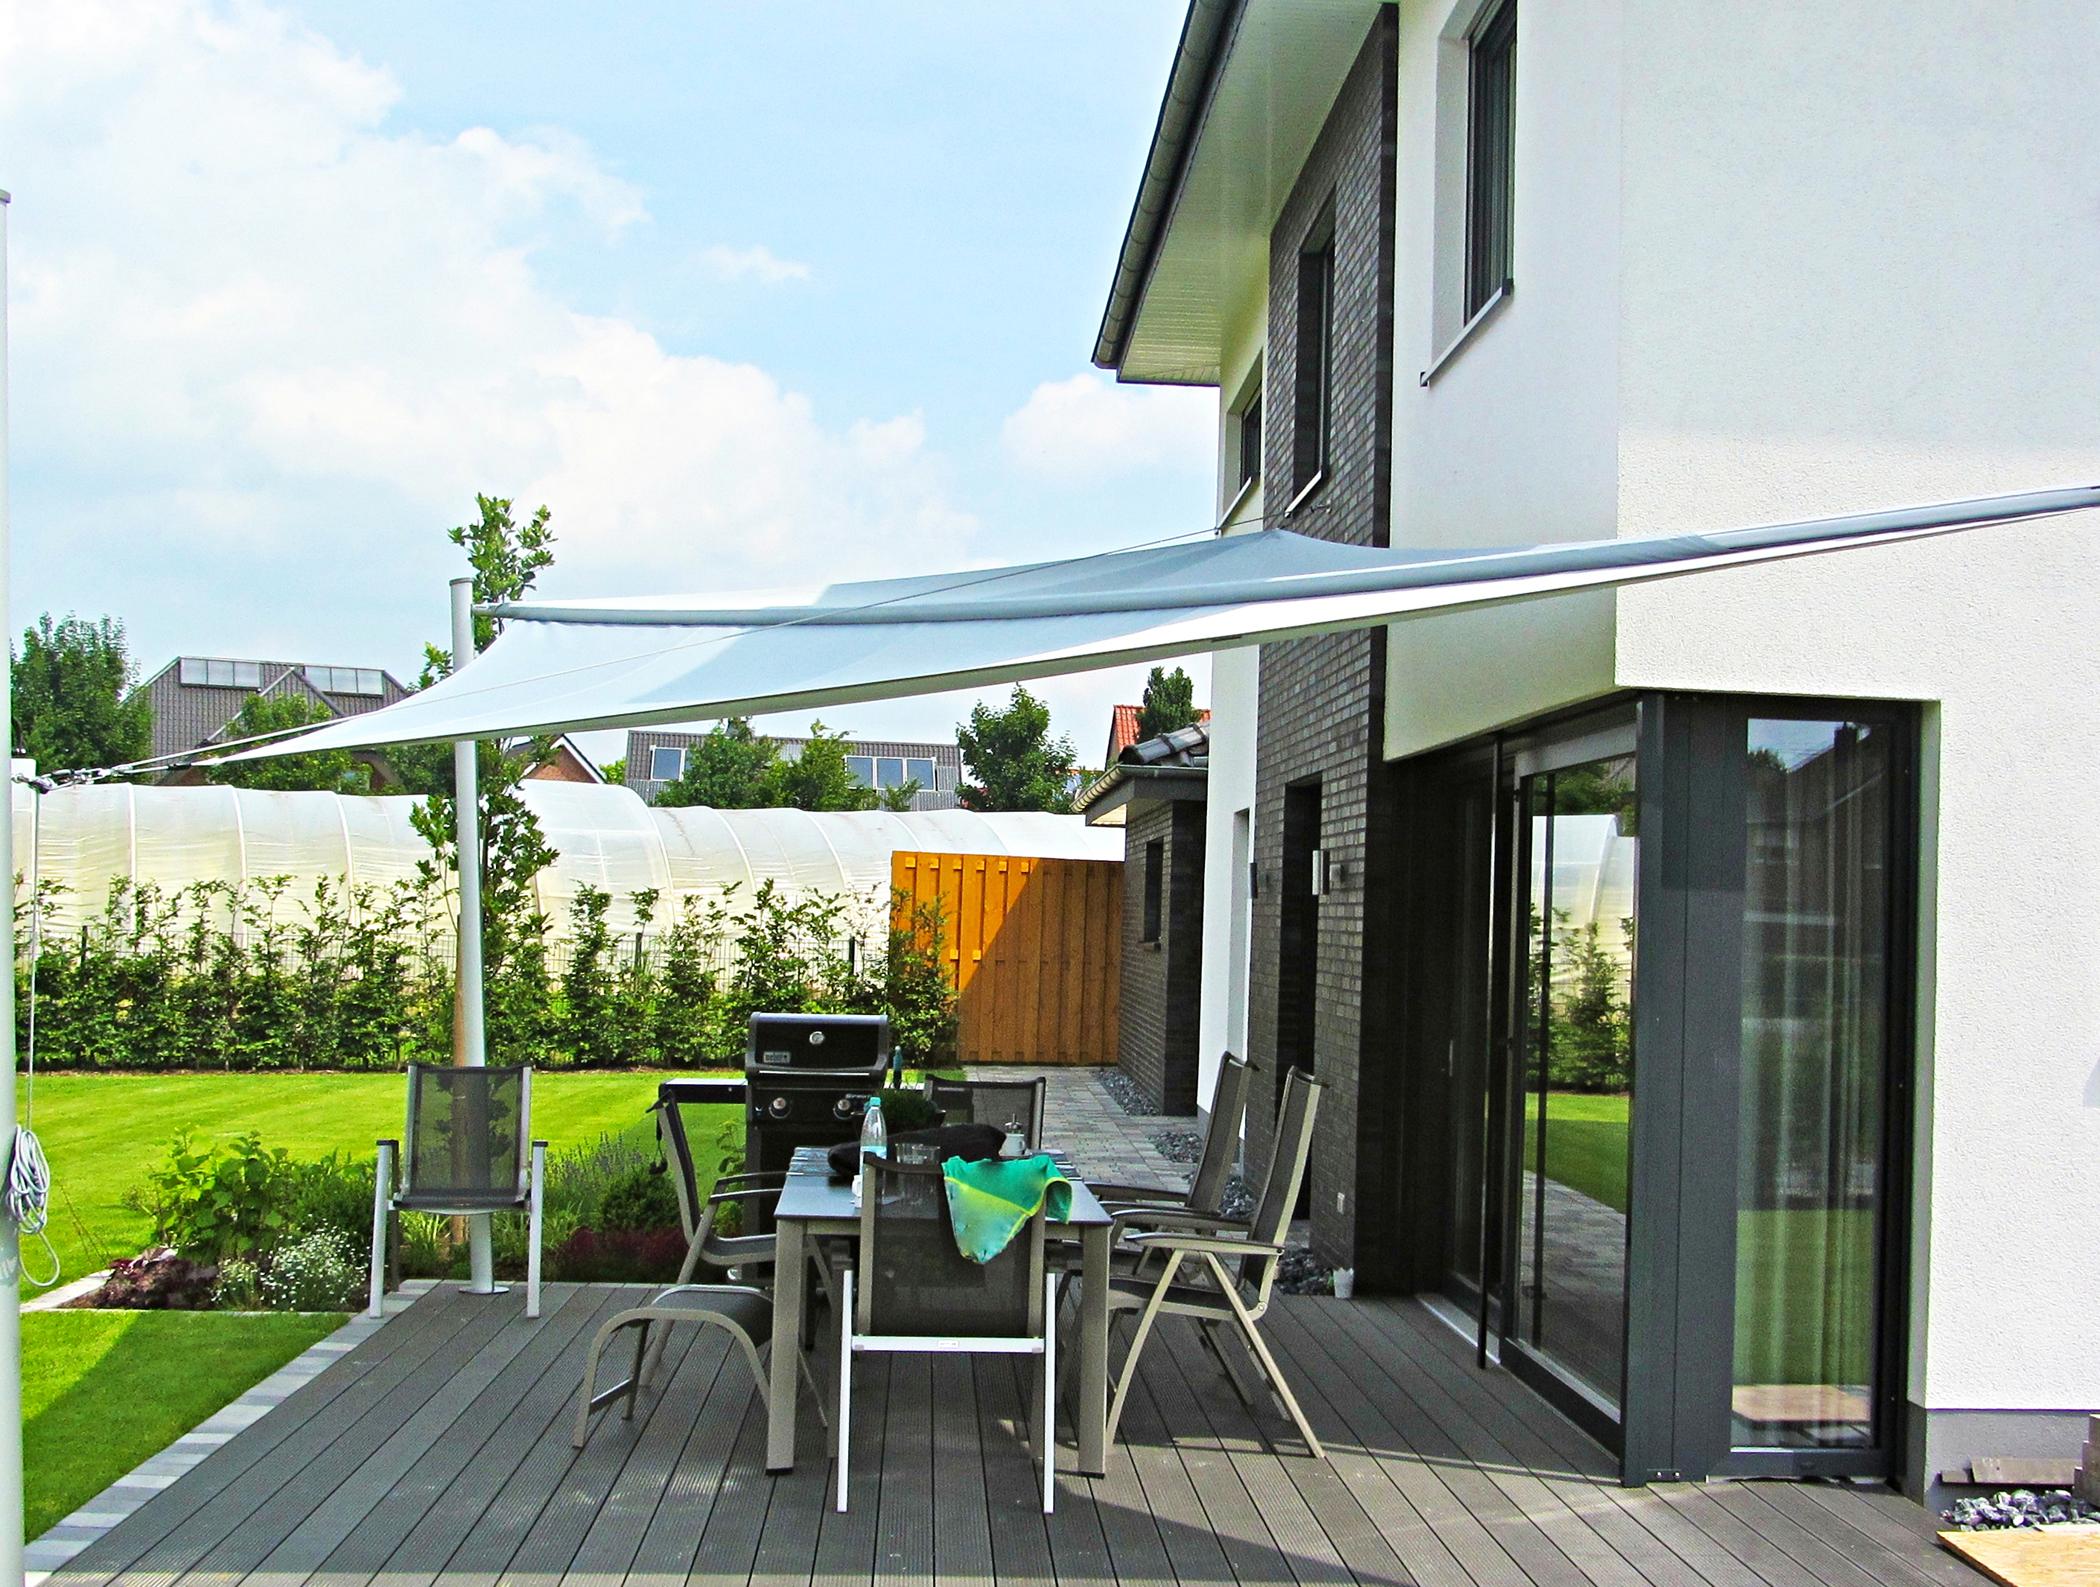 Sonnensegel für die Terrasse #terrasse #gartenmöbel #sonnensegel #holzterrasse #terrassenmöbel #gartengrill ©Sonnensegel Pina Design